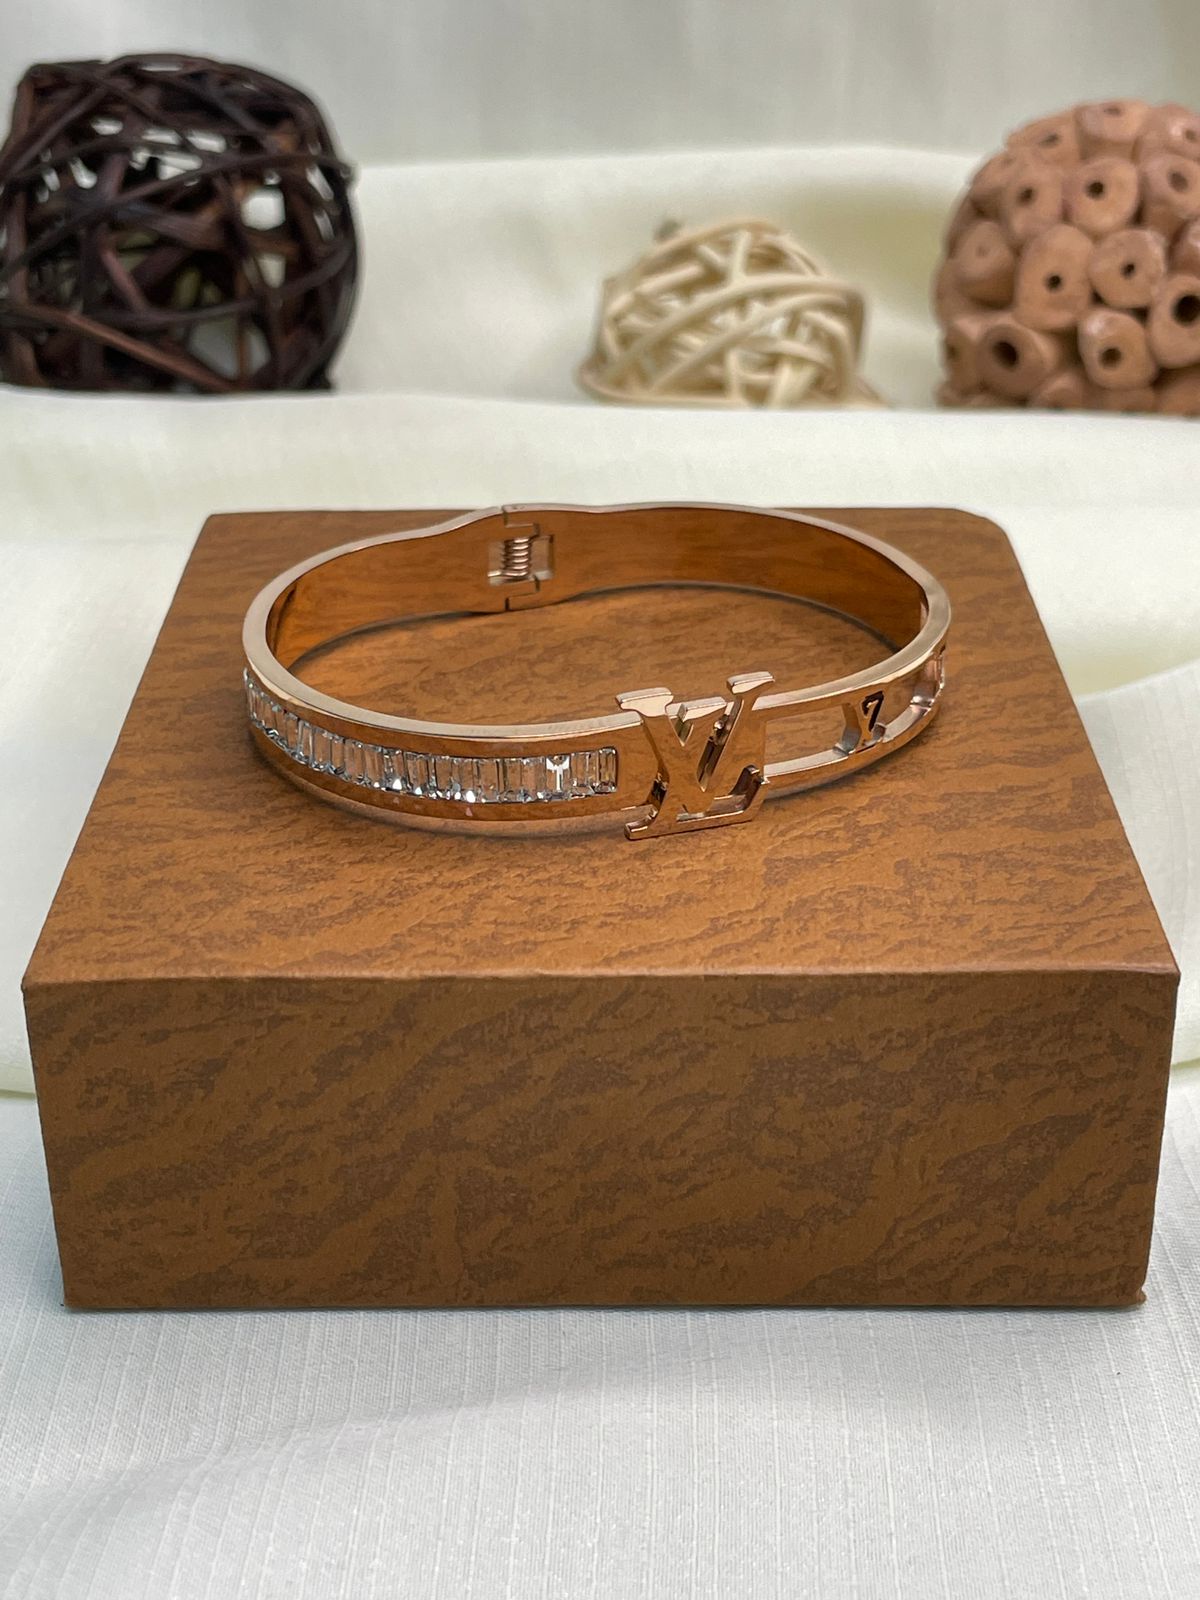 lv bracelet for women silver